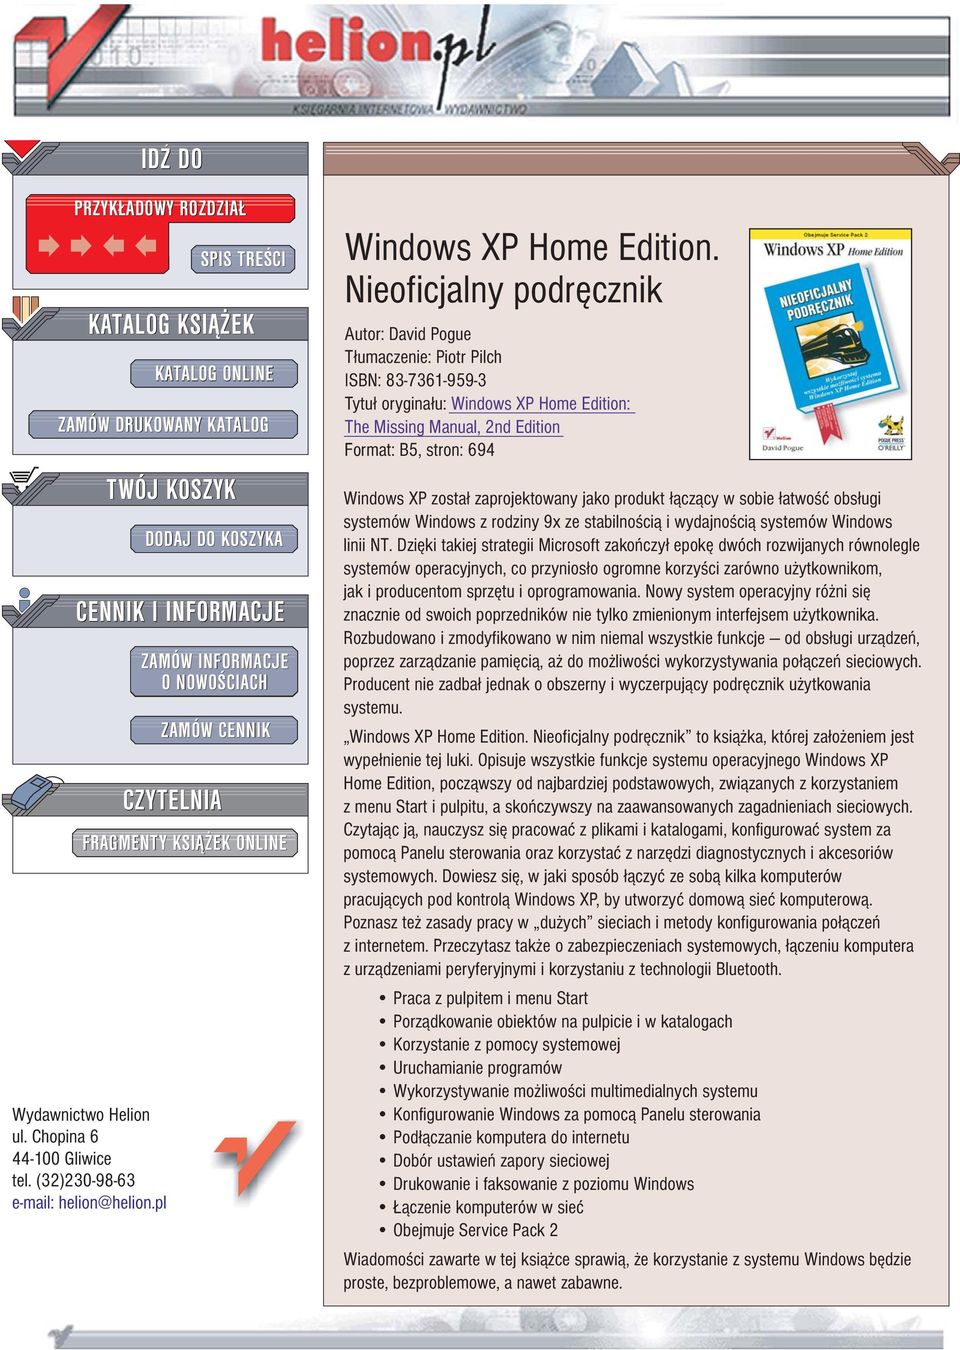 Nieoficjalny podrêcznik Autor: David Pogue T³umaczenie: Piotr Pilch ISBN: 83-7361-959-3 Tytu³ orygina³u: Windows XP Home Edition: The Missing Manual, 2nd Edition Format: B5, stron: 694 Windows XP